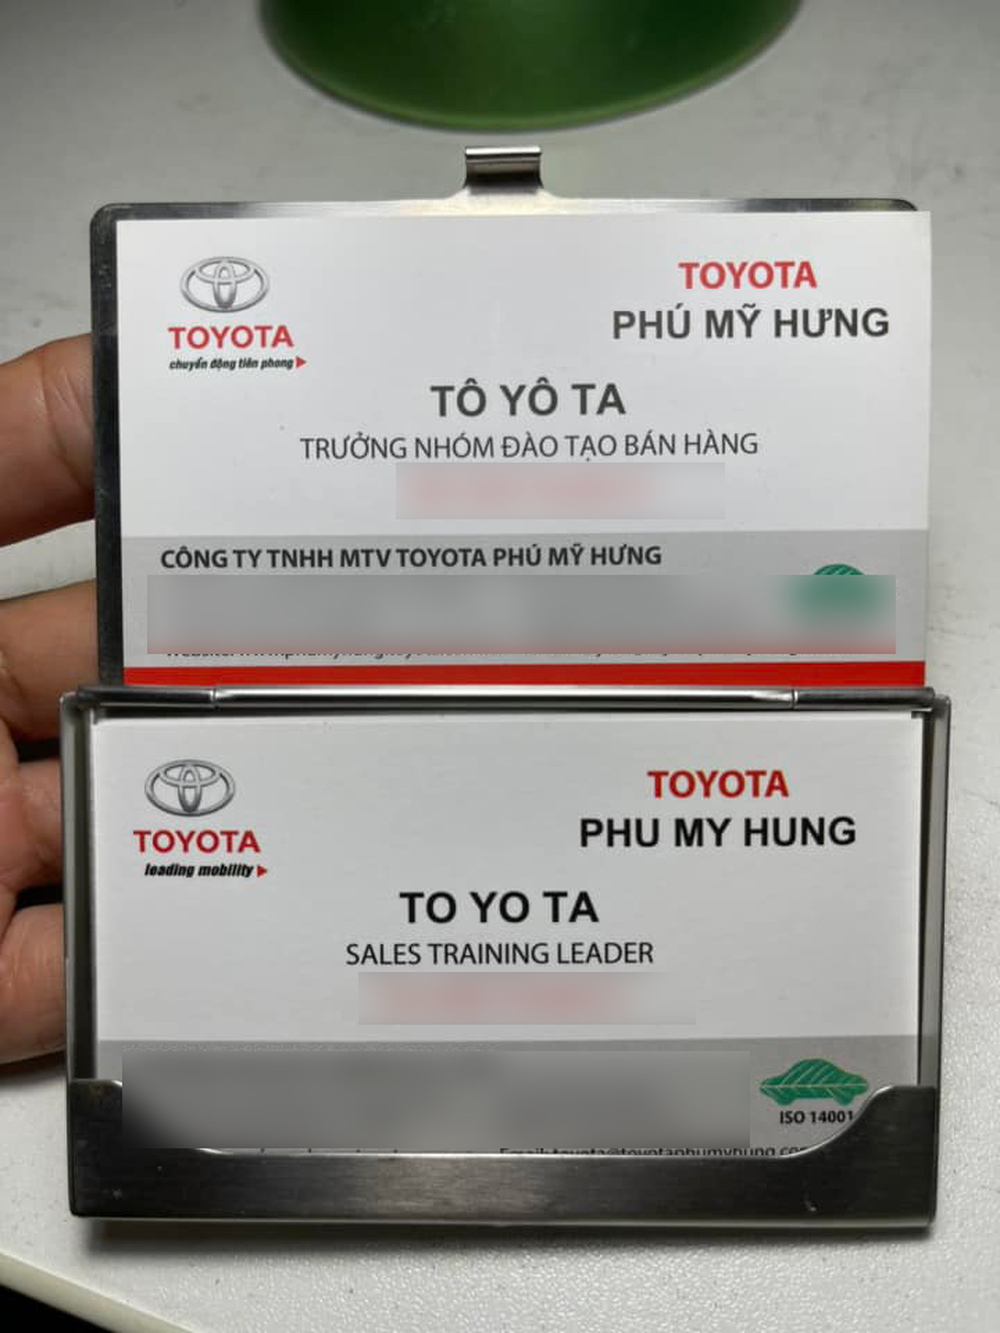 Giống như một lời tiên đoán, sau này, anh Tô Yô Ta về làm nhân viên cho công ty Toyota cùng tên với mình